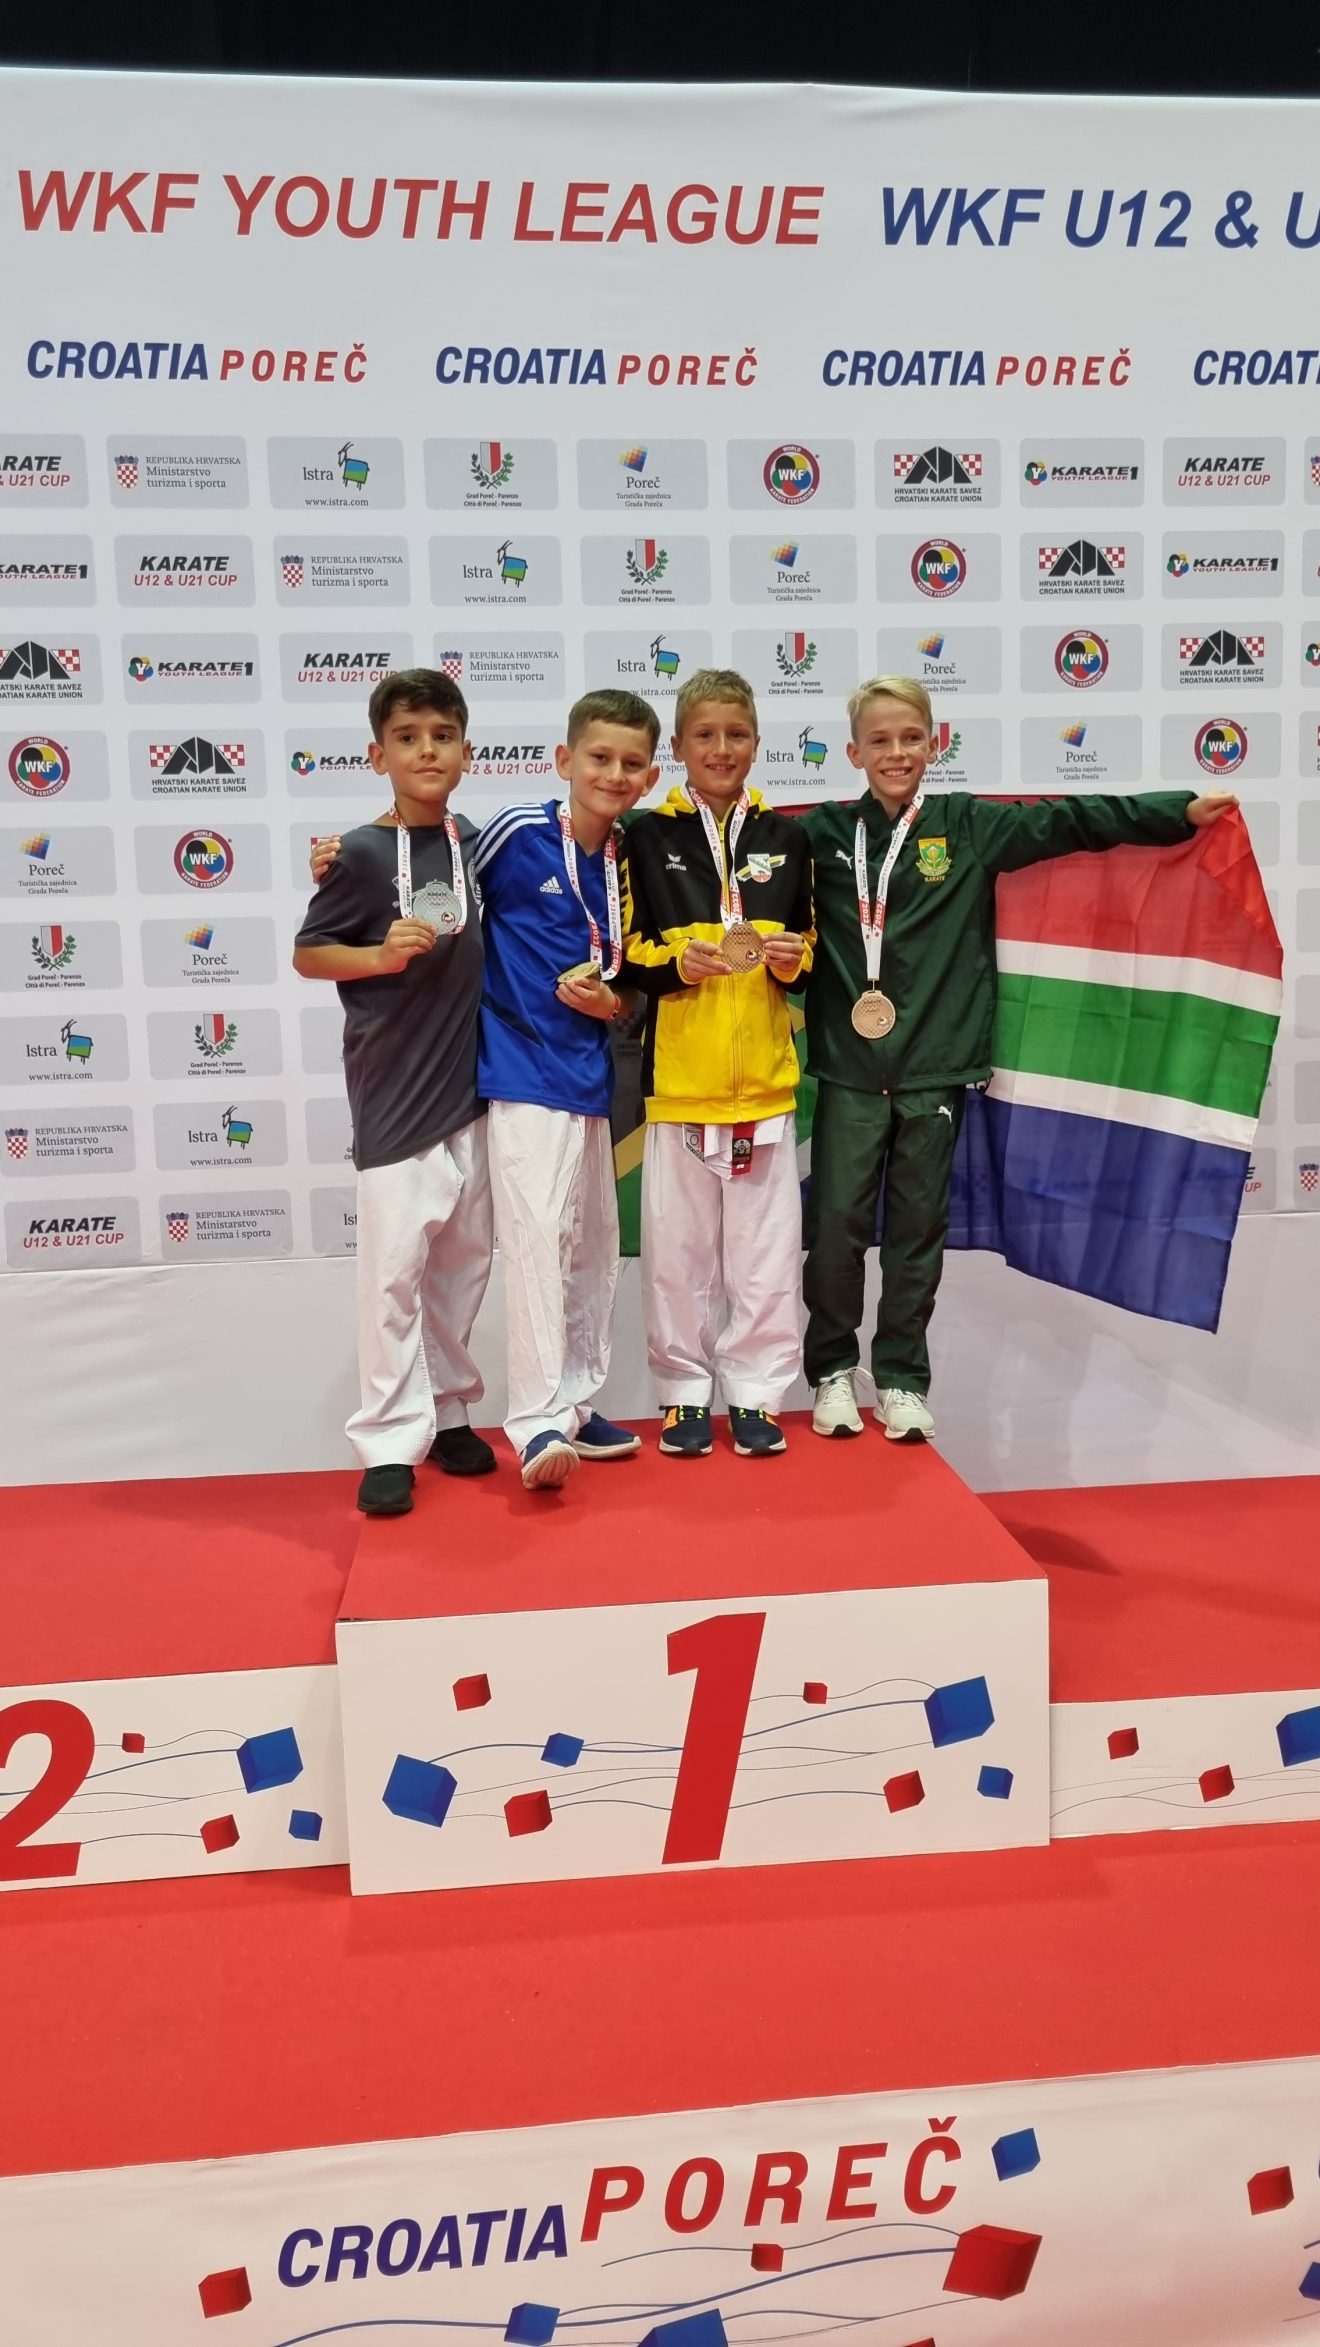 Cezary Pietrzak gewinnt Gold bei der WKF Youth League in Porec